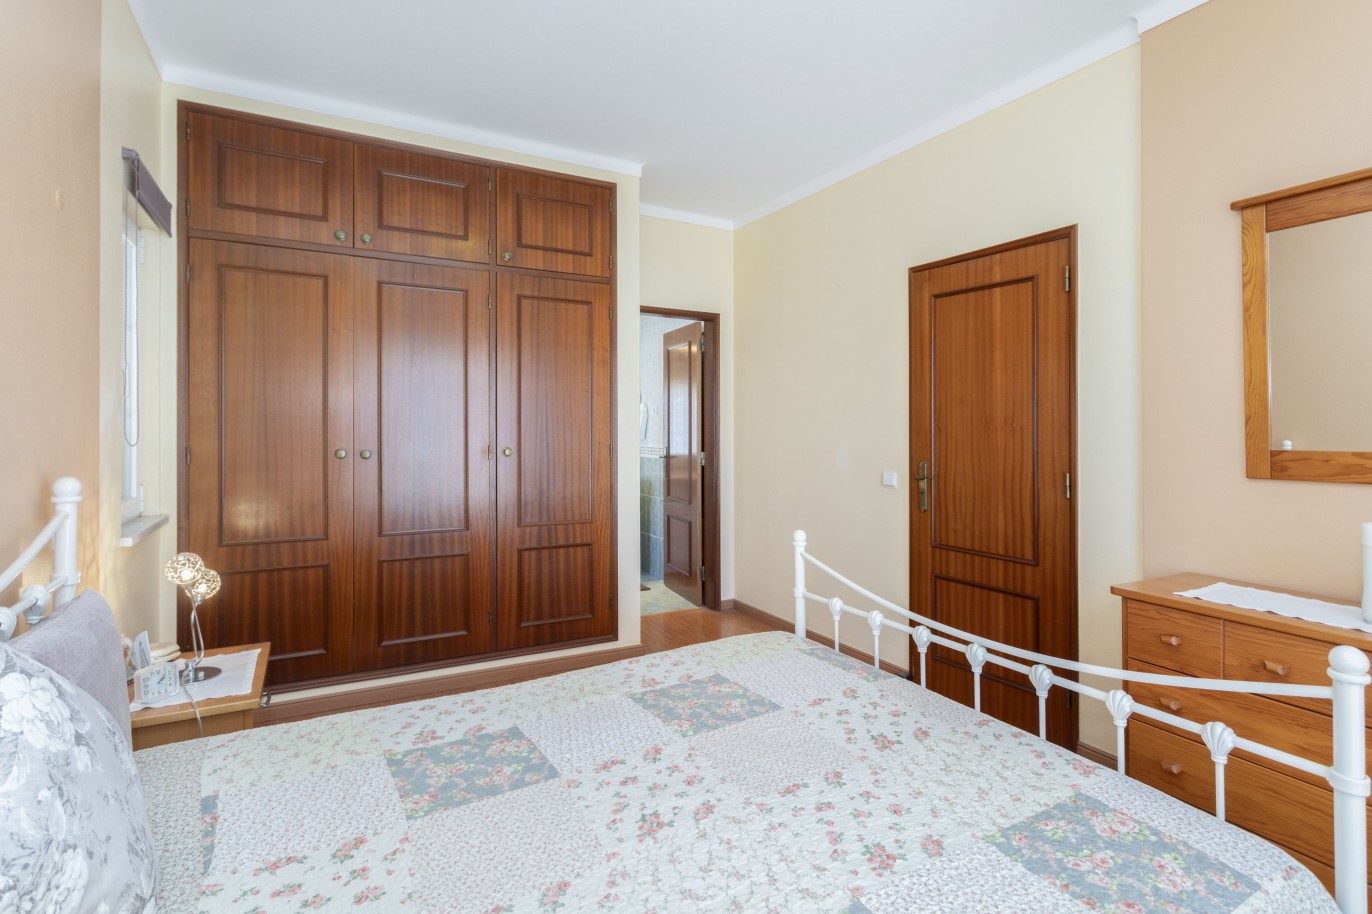 Villa de 3 dormitorios en venta en Porto de Mós, Algarve_233232